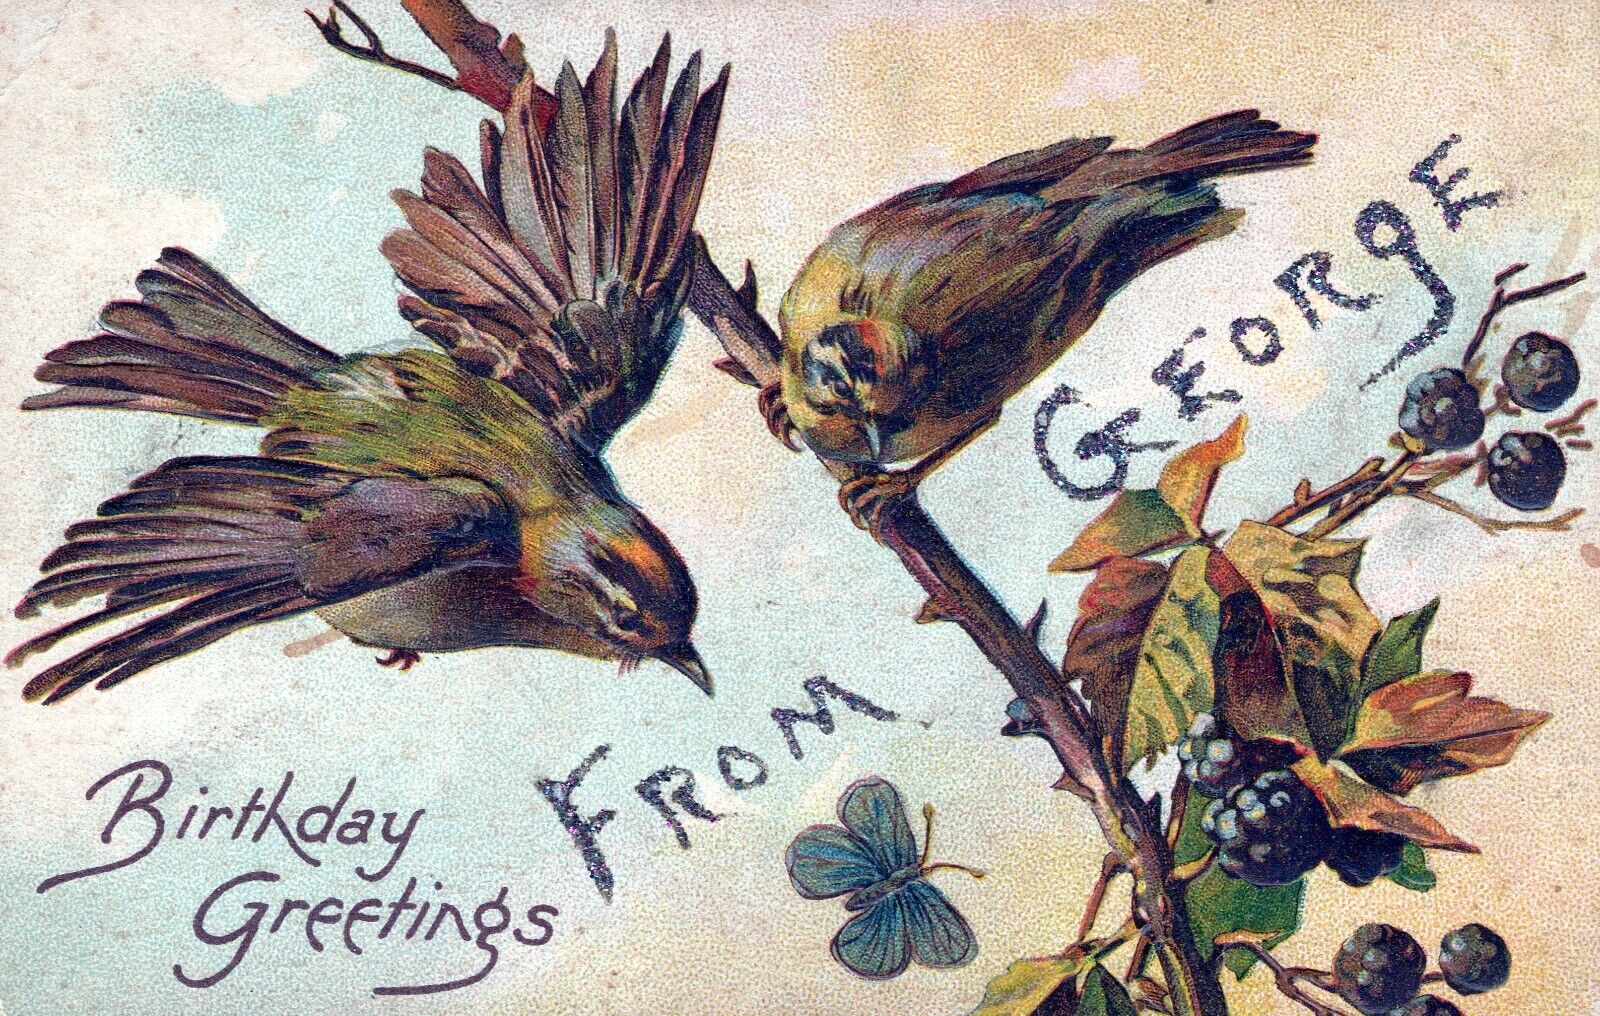 From George Birthday Greetings & Wishes Birds & Berries Embossed Postcard